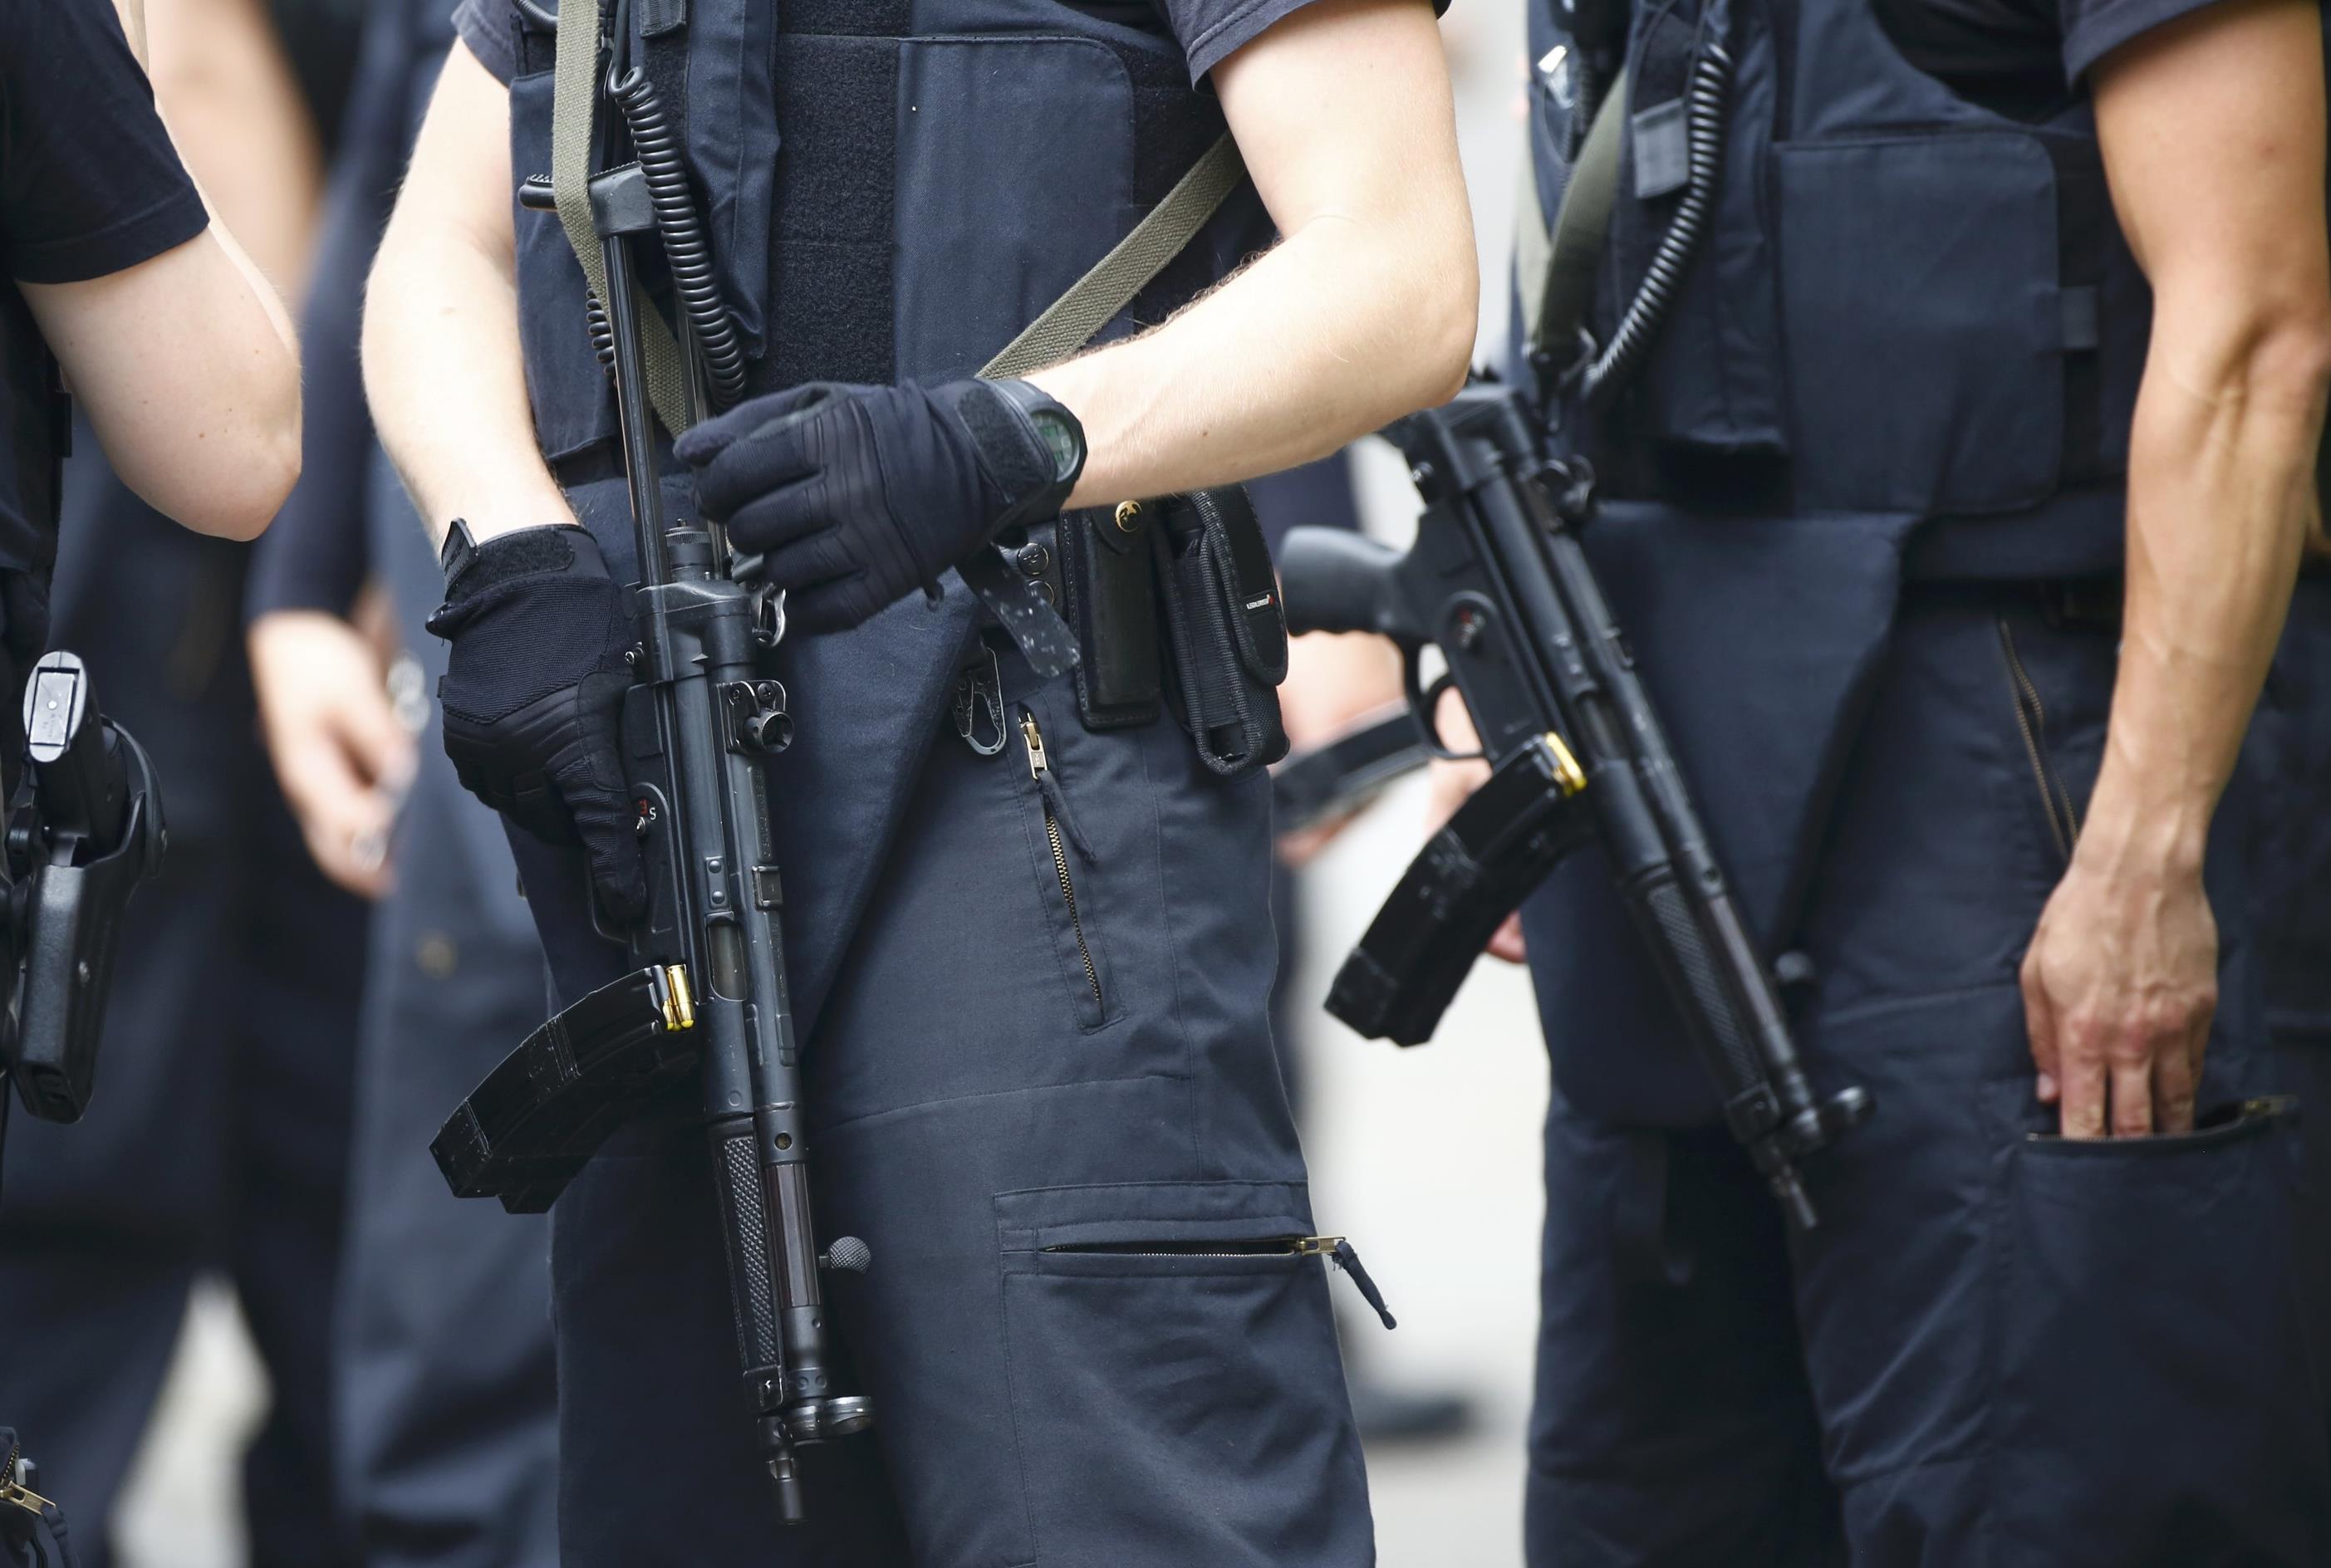 Αστυνομία της Λειψίας: Χάσαμε οπλοπολυβόλο, αν το δείτε ενημερώστε